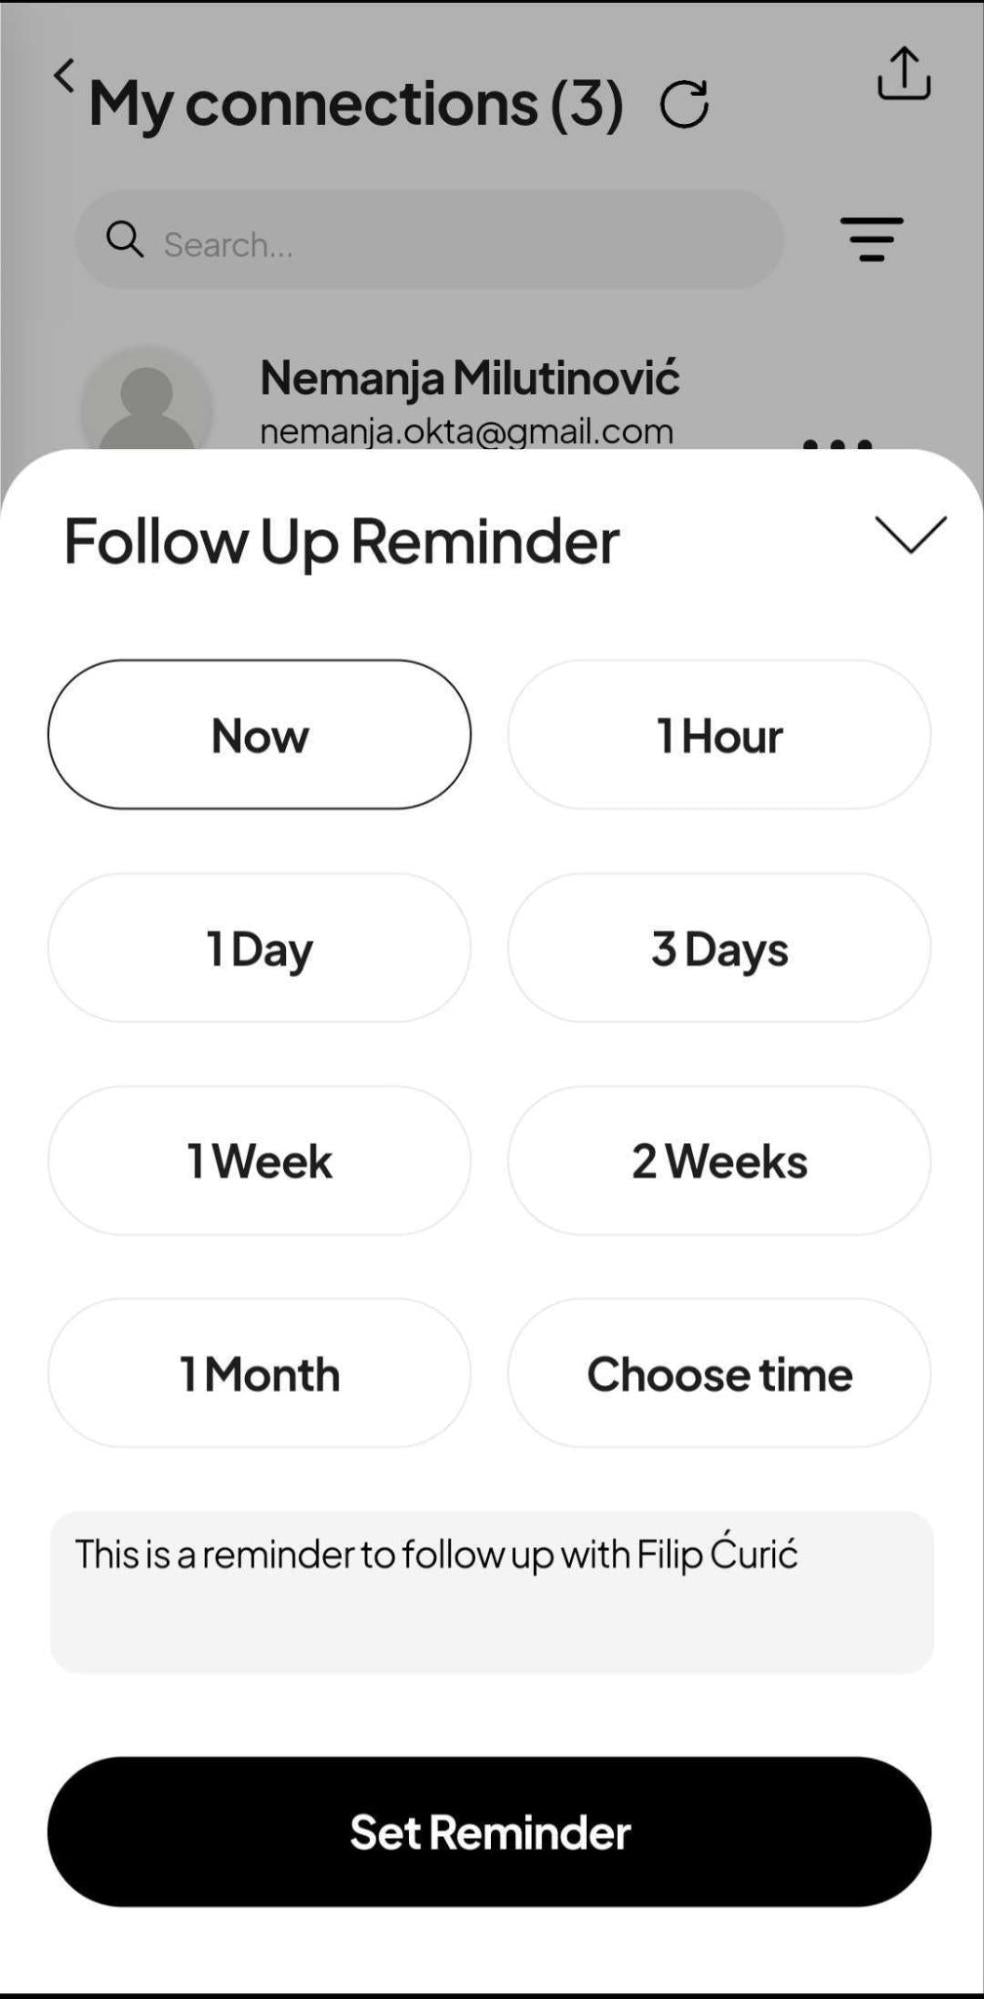 follow-up-reminder-set-time